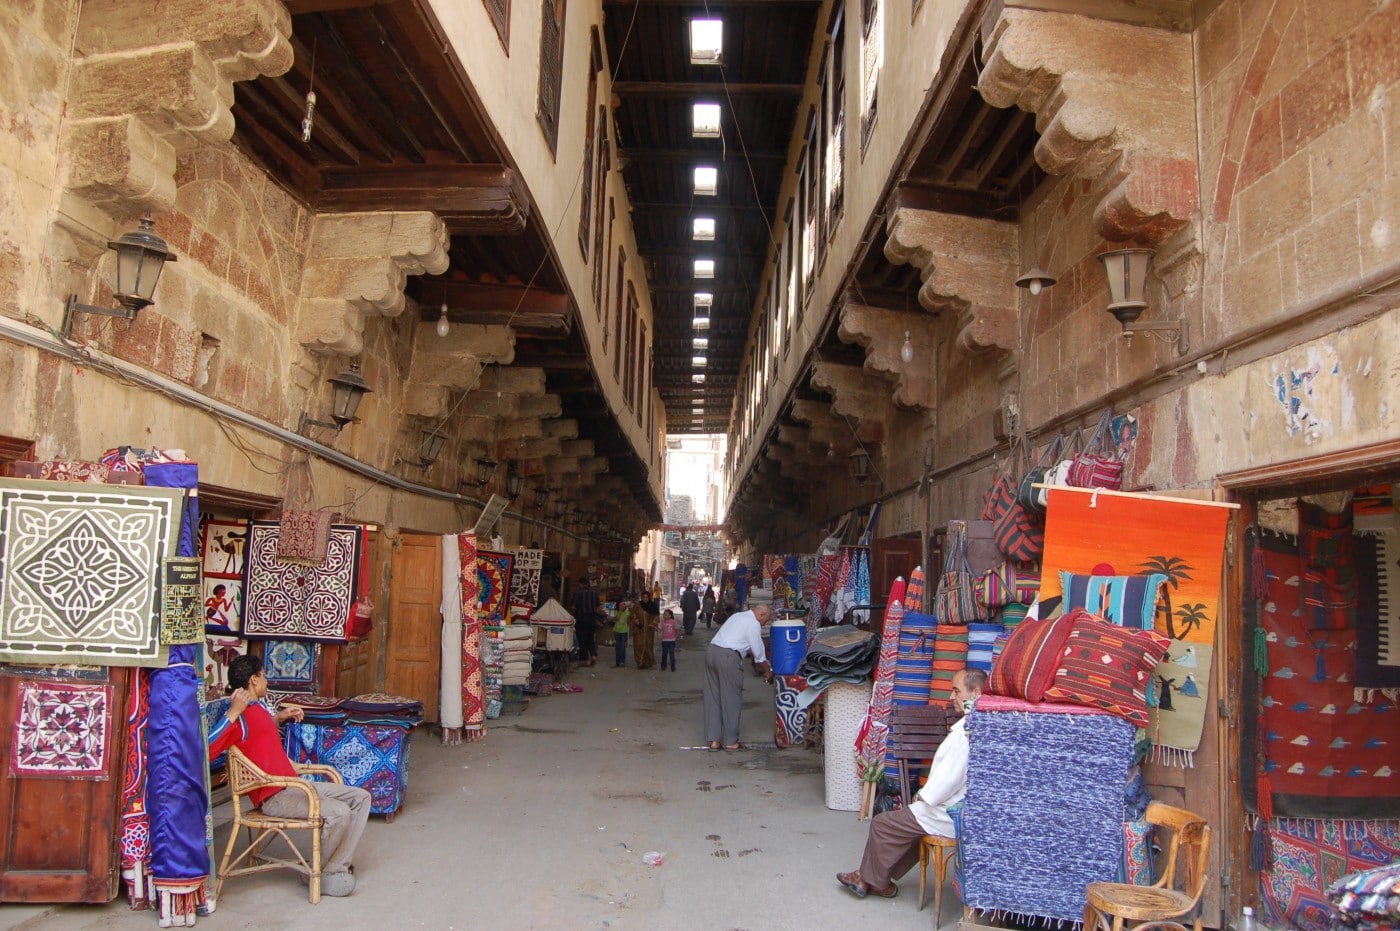 Kairos äldsta stadsdelar